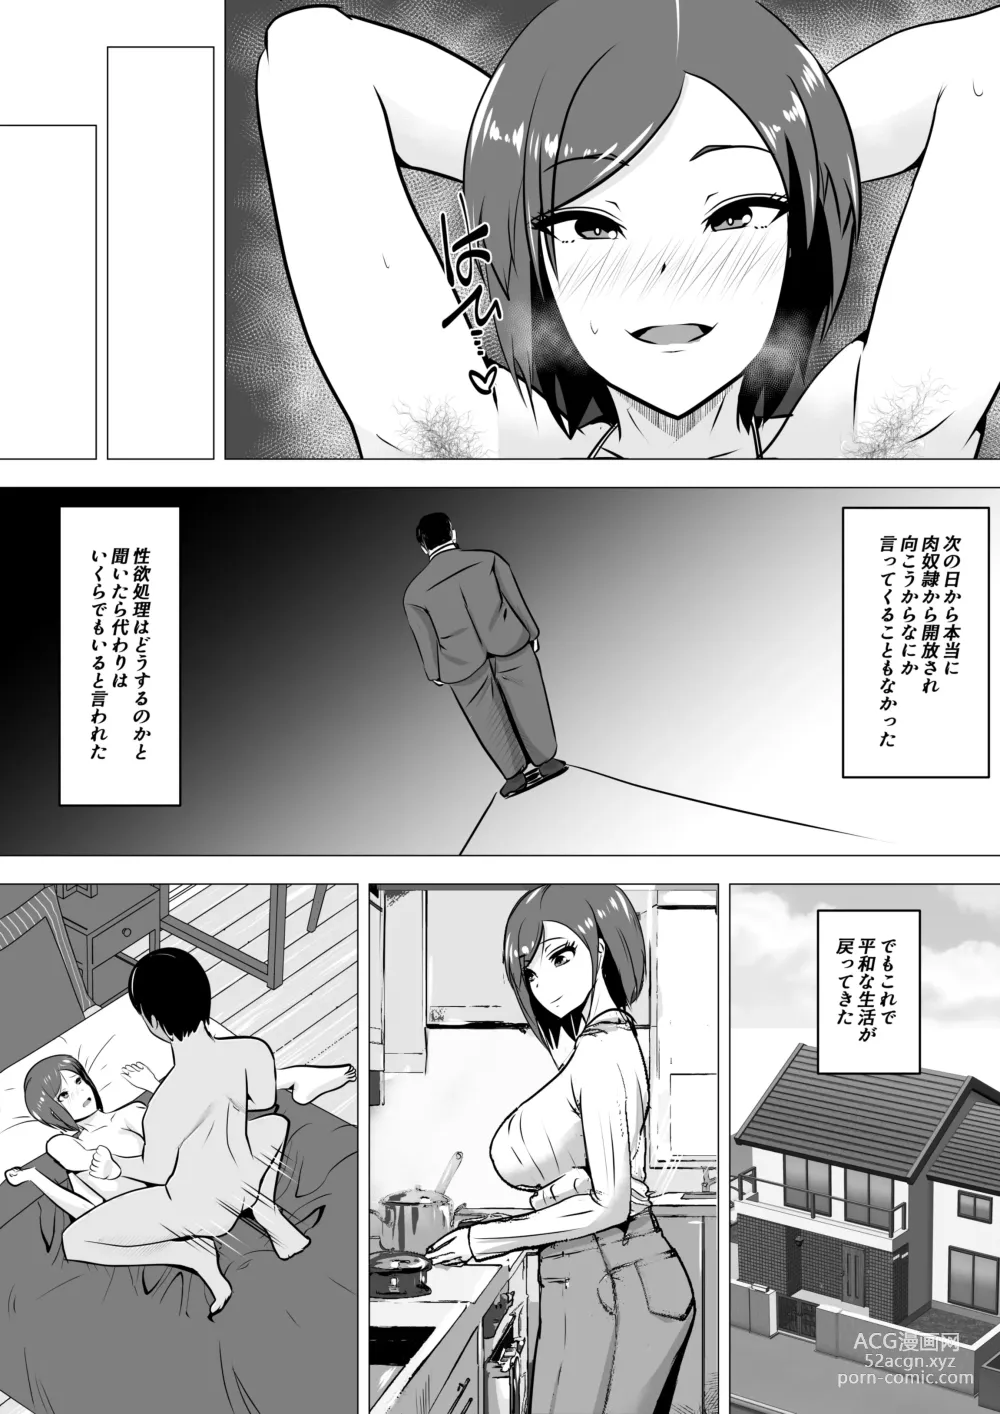 Page 23 of doujinshi Nikubenki Hisho ~Aisuru Otto o Tasukeru Tame Shachou no Nikubenki to naru Onna~